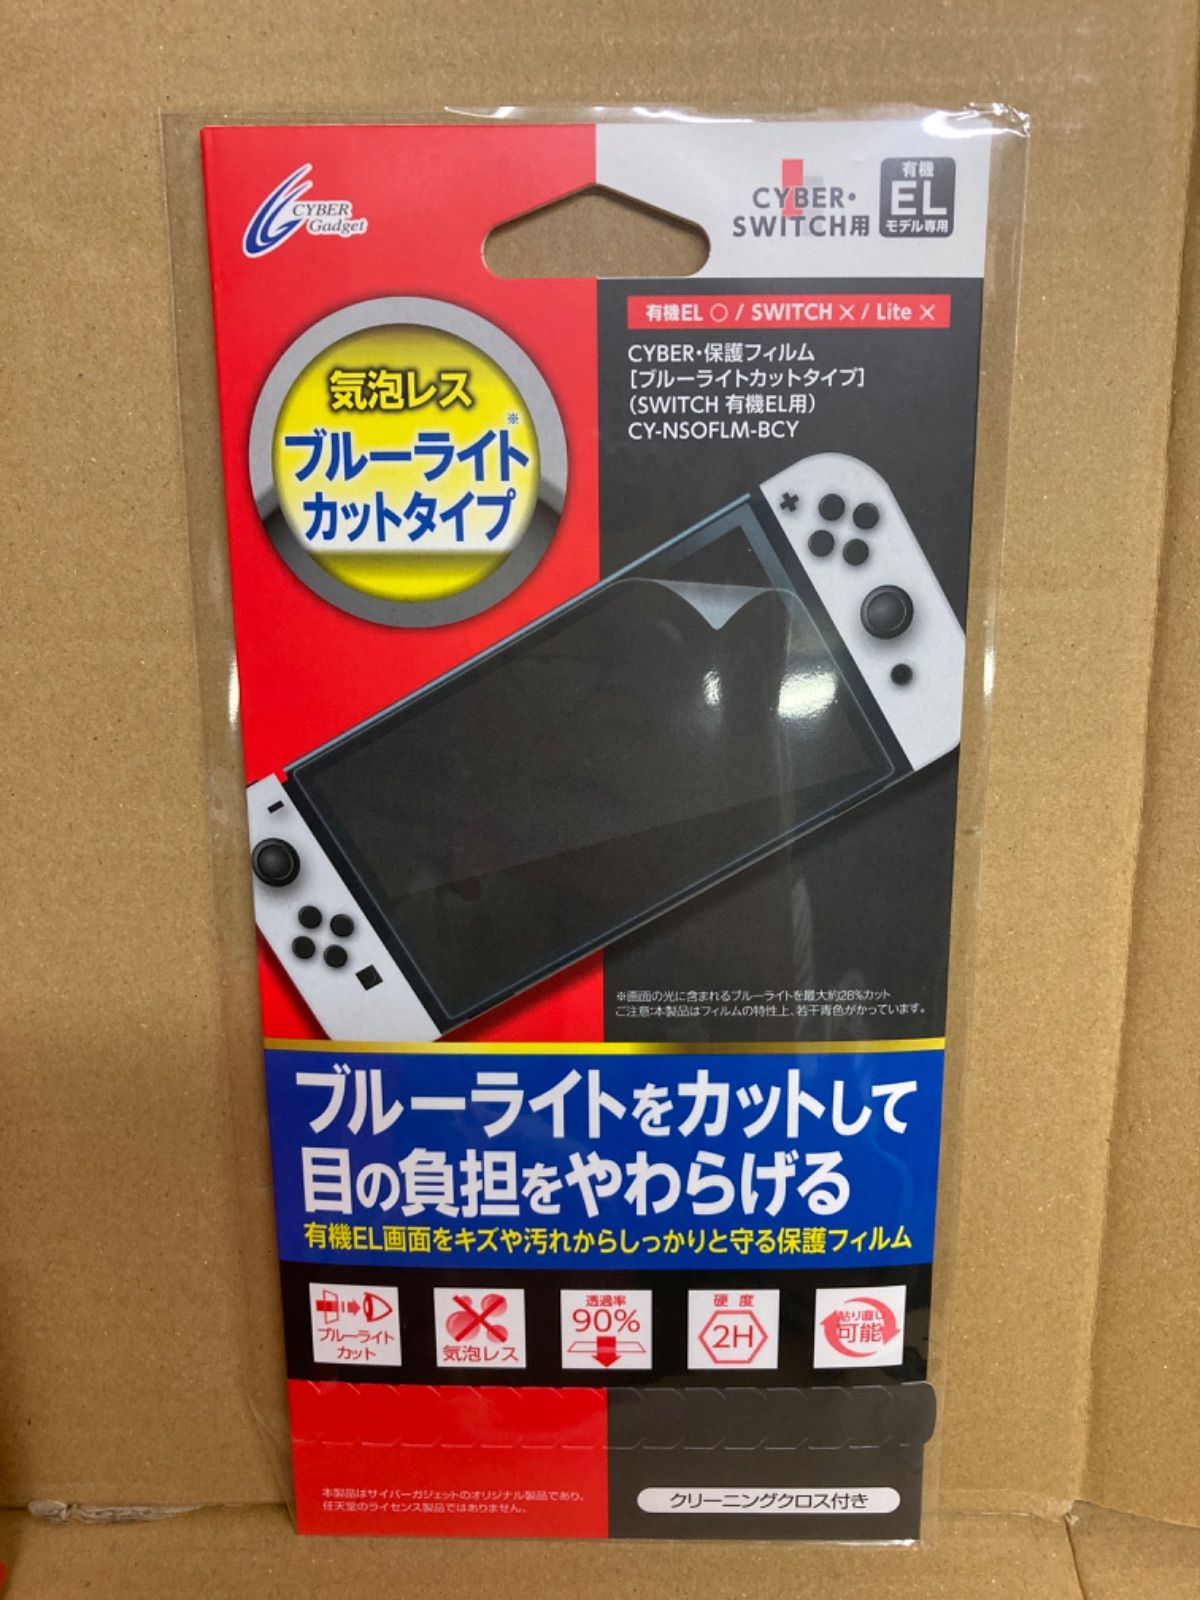 055【未開封品】Nintendo Switch 有機EL ネオン、保護フィルムセット 